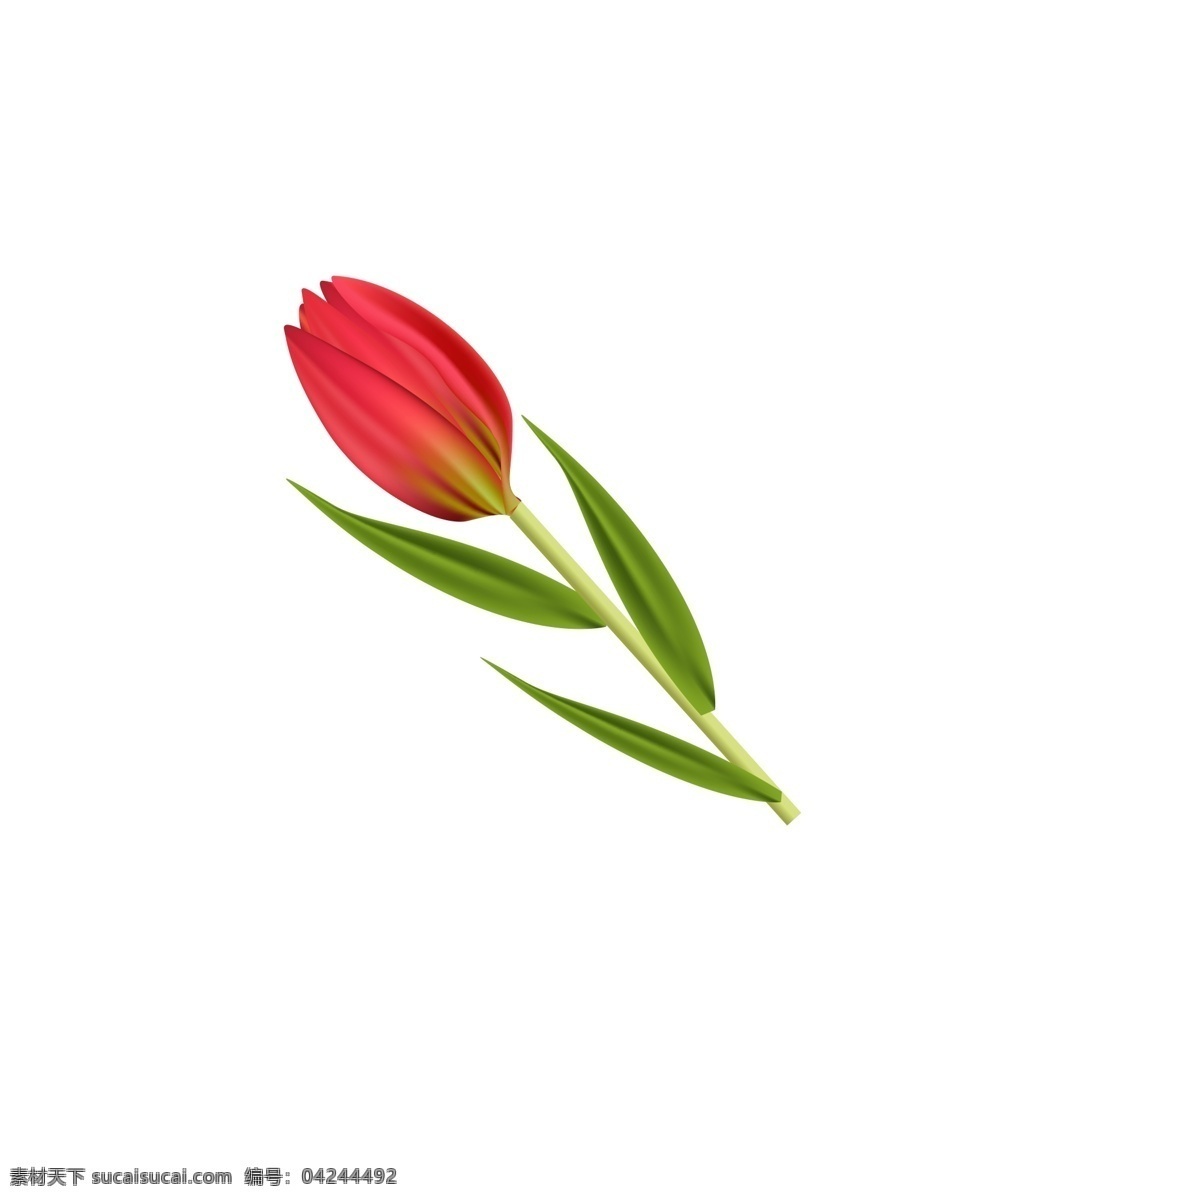 春季 植物 花朵 鲜花 花香 迷人 花卉 红色 绿叶 春天 盛开